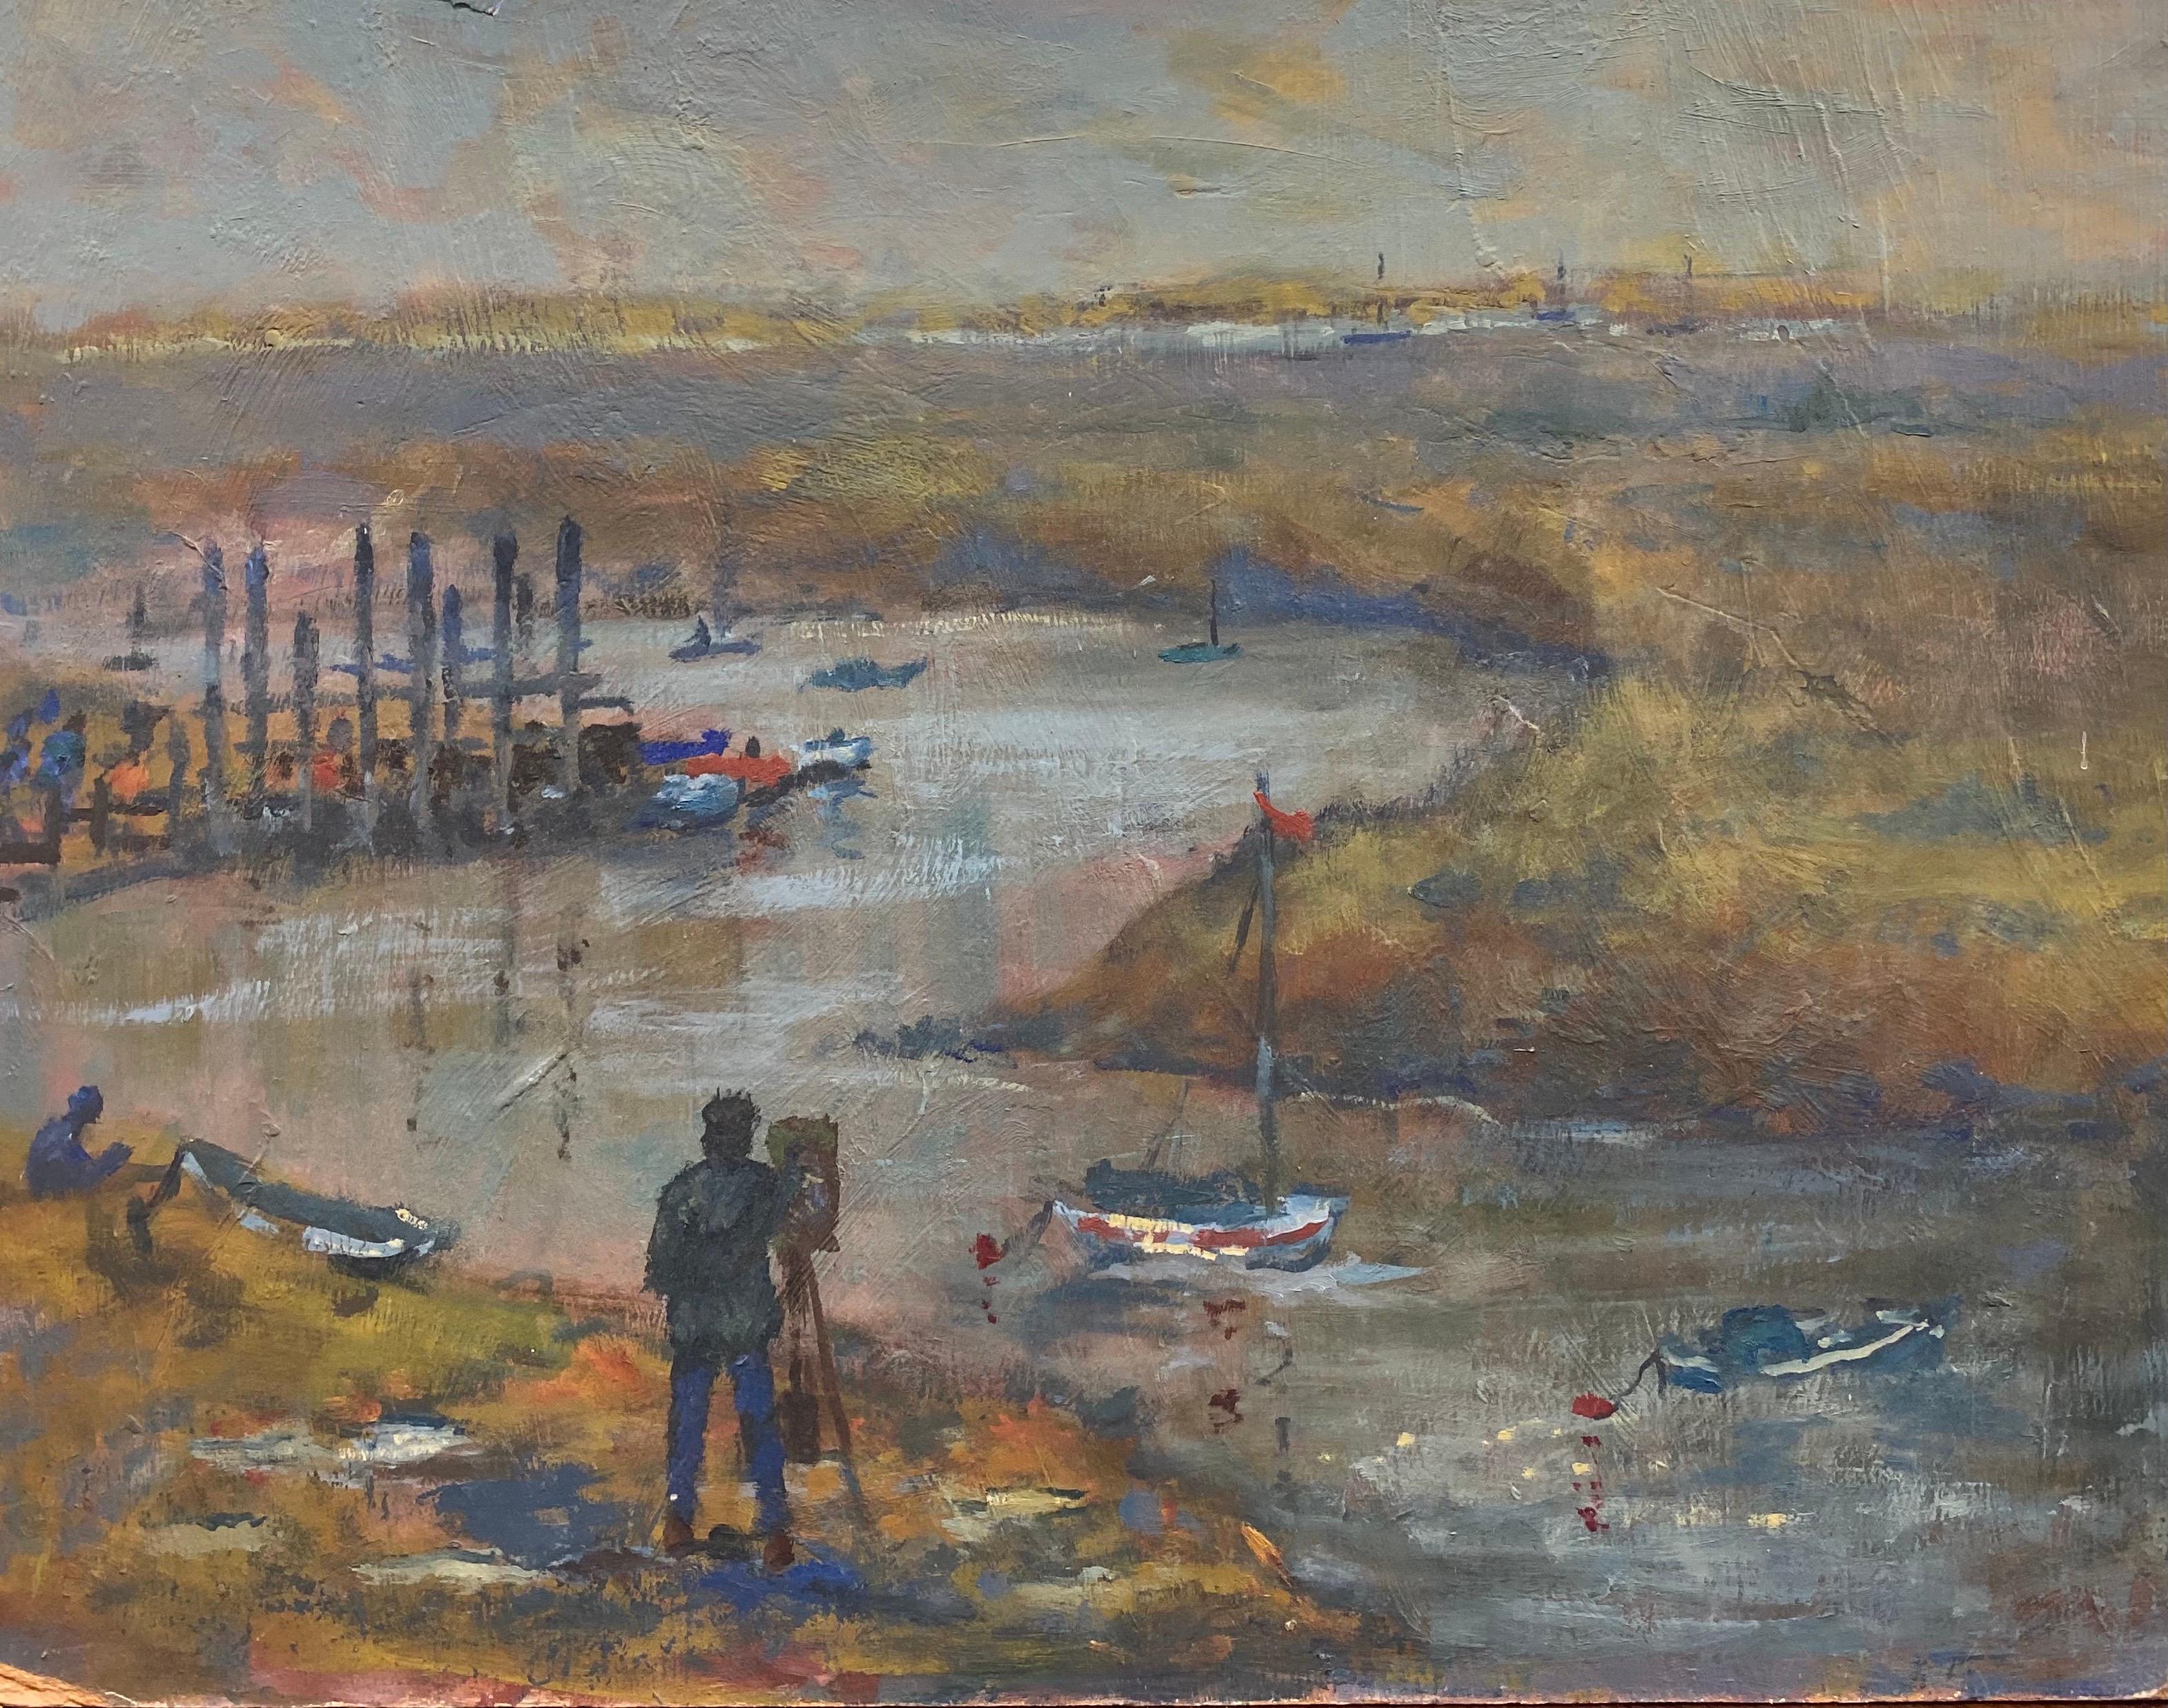 Landscape Painting English Impressionist - Peinture à l'huile impressionniste anglaise vintage - Peinture d'un artiste par Estuary Boats